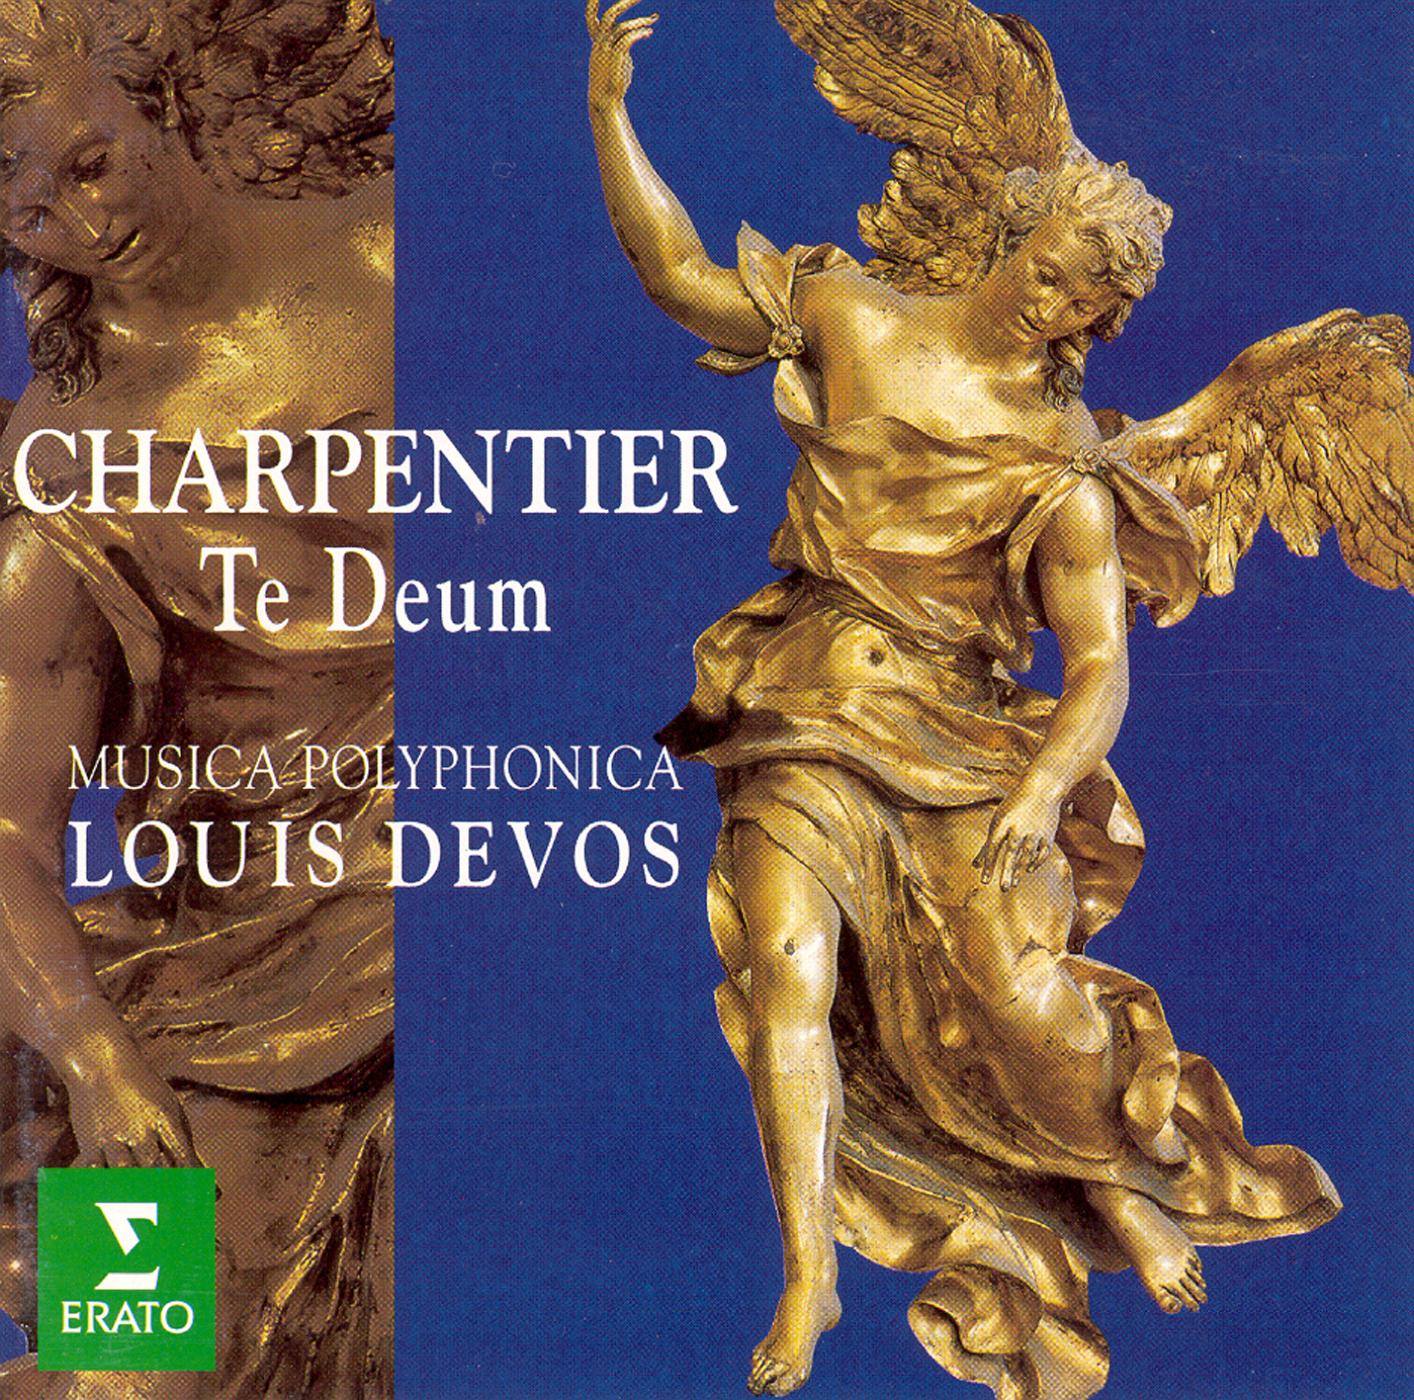 Charpentier:Canticum in honorem Sancti Ludovici regis galliae H365 : XII Beata gens